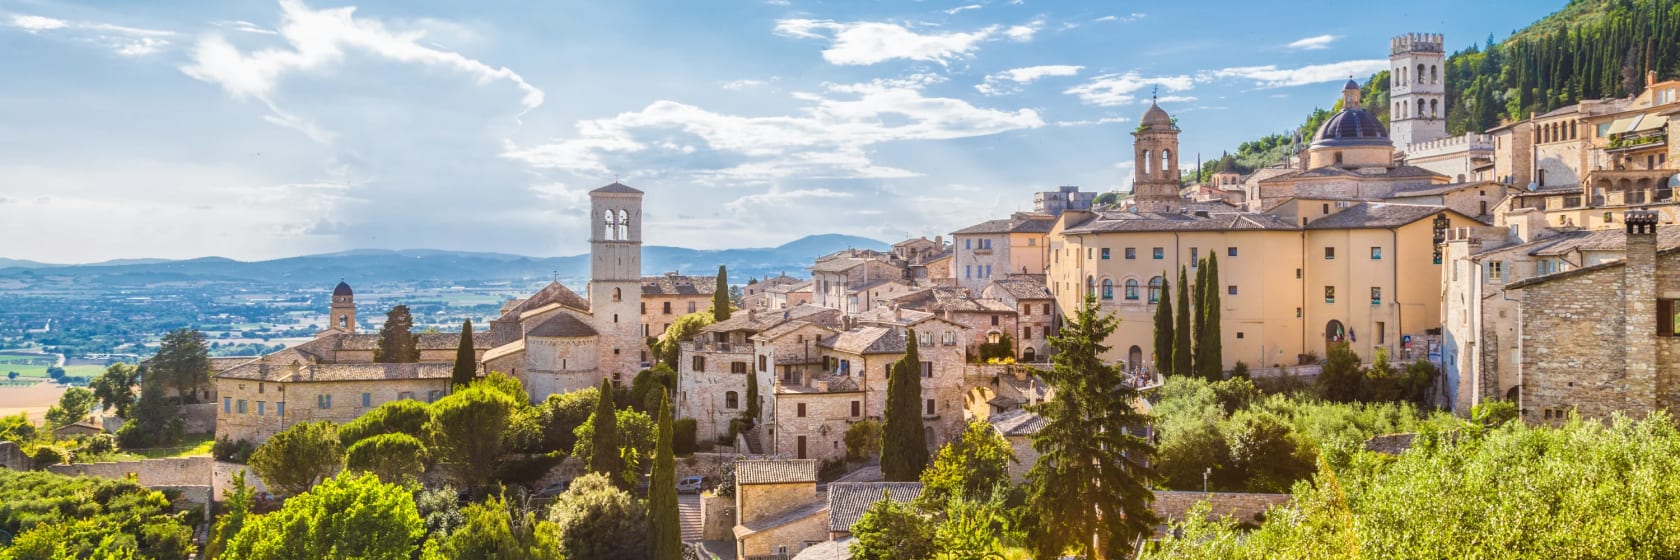 Udsigt over Assisi i Umbrien, Italien